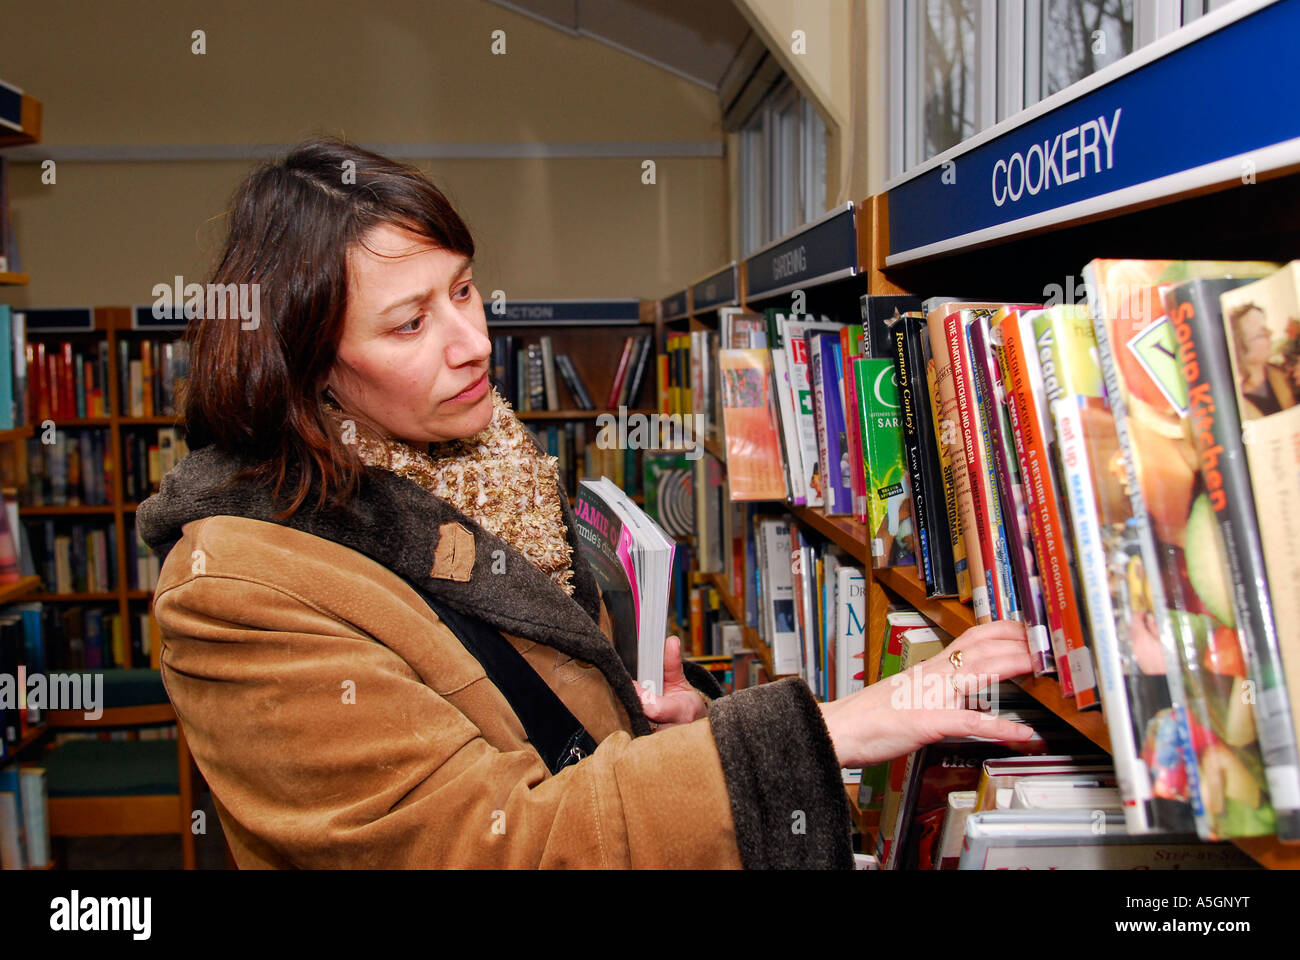 La mujer examina la sección libro de cocina en su biblioteca local, Kingston, Surrey, Reino Unido. Foto de stock